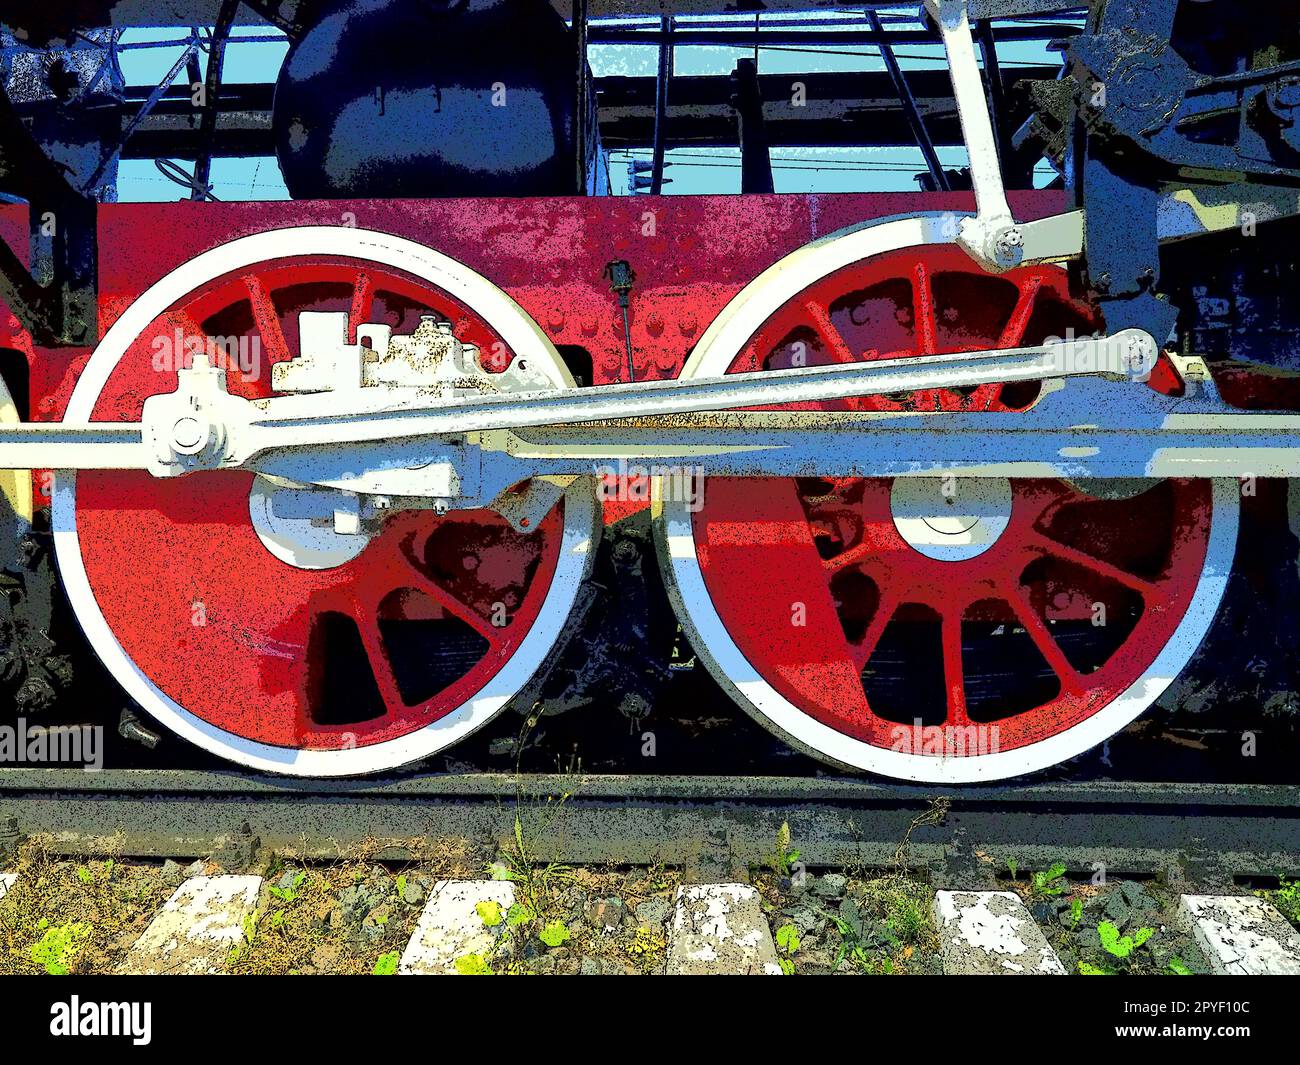 Roues rétro vintage d'une locomotive ou d'un train en gros plan. Grandes roues rouges en métal lourd avec mécanismes de guidage de piston. Locomotive des 19e - 20e siècles avec une machine à vapeur. Photo éclatante et éclatante Banque D'Images